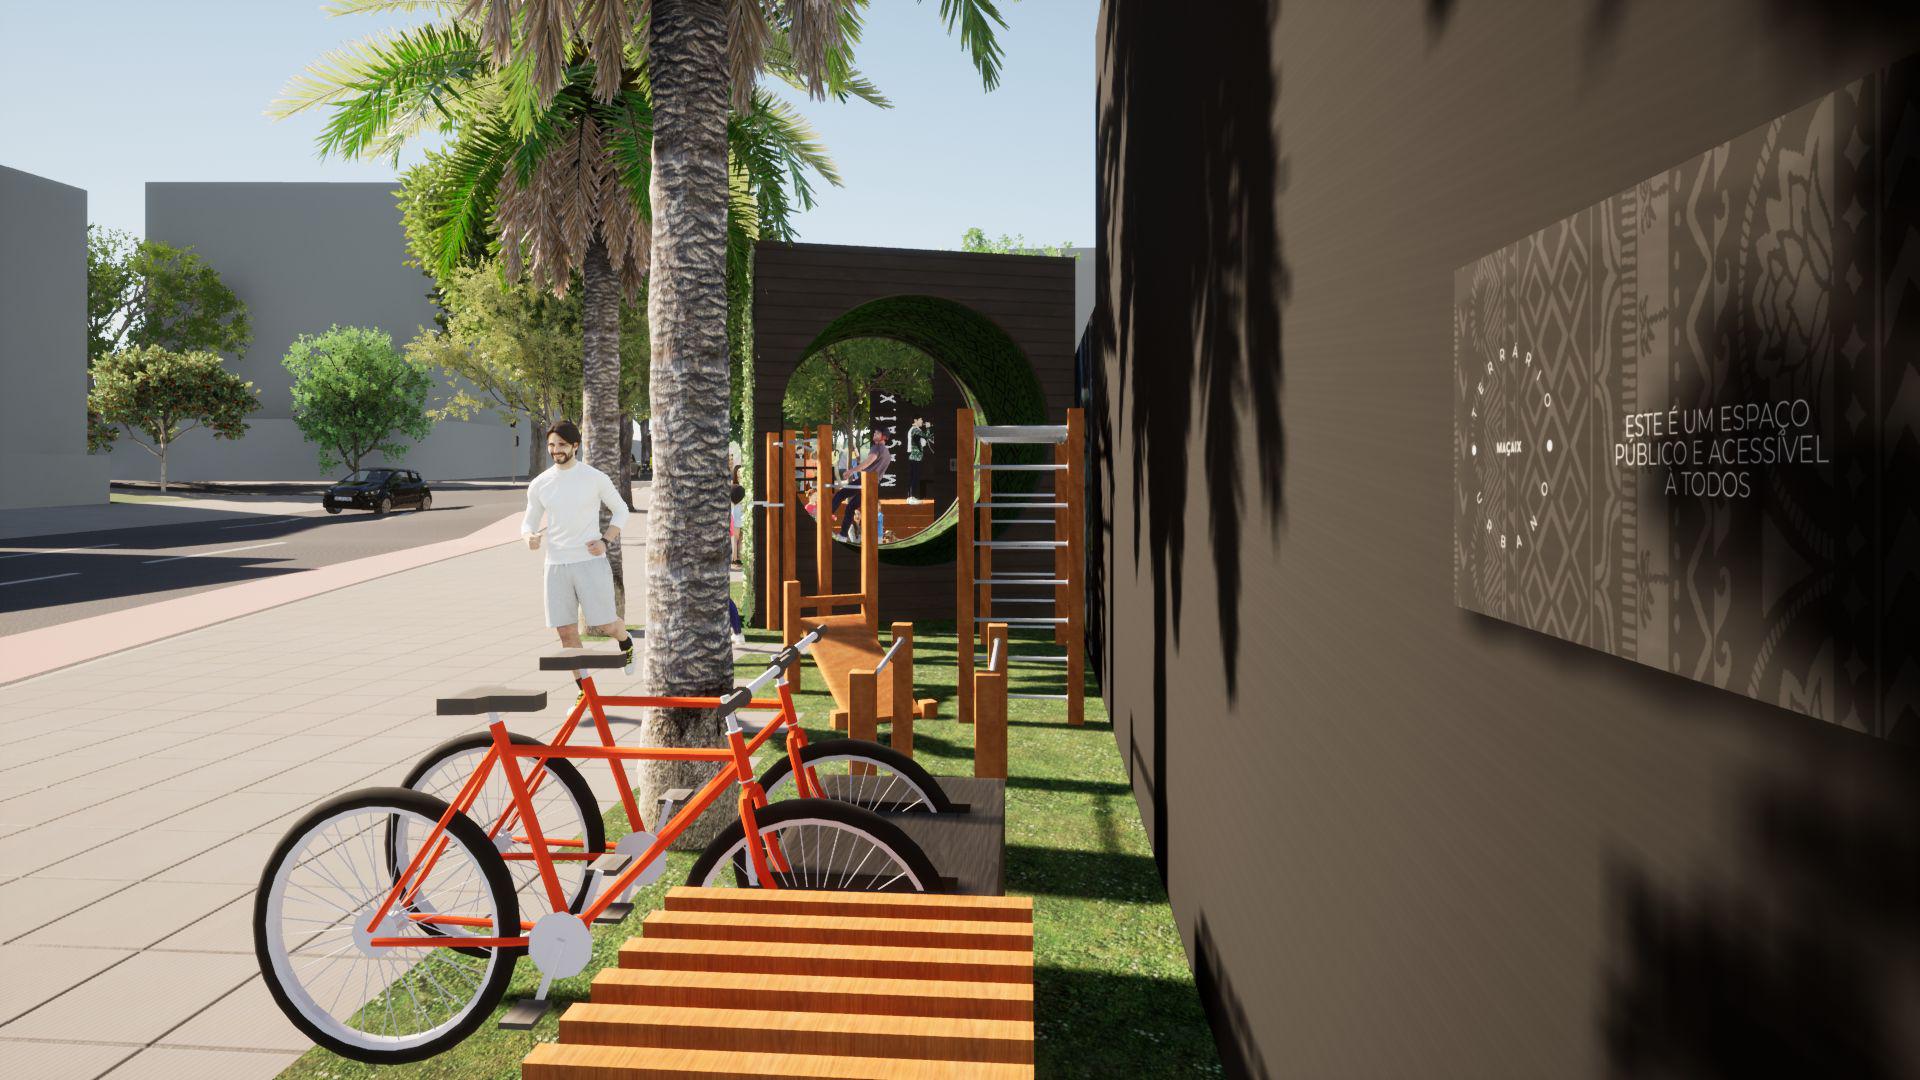 Ilustração conceito para terrário urbano, exibindo detalhe do bicicletário e alguns equipamentos de ginástica